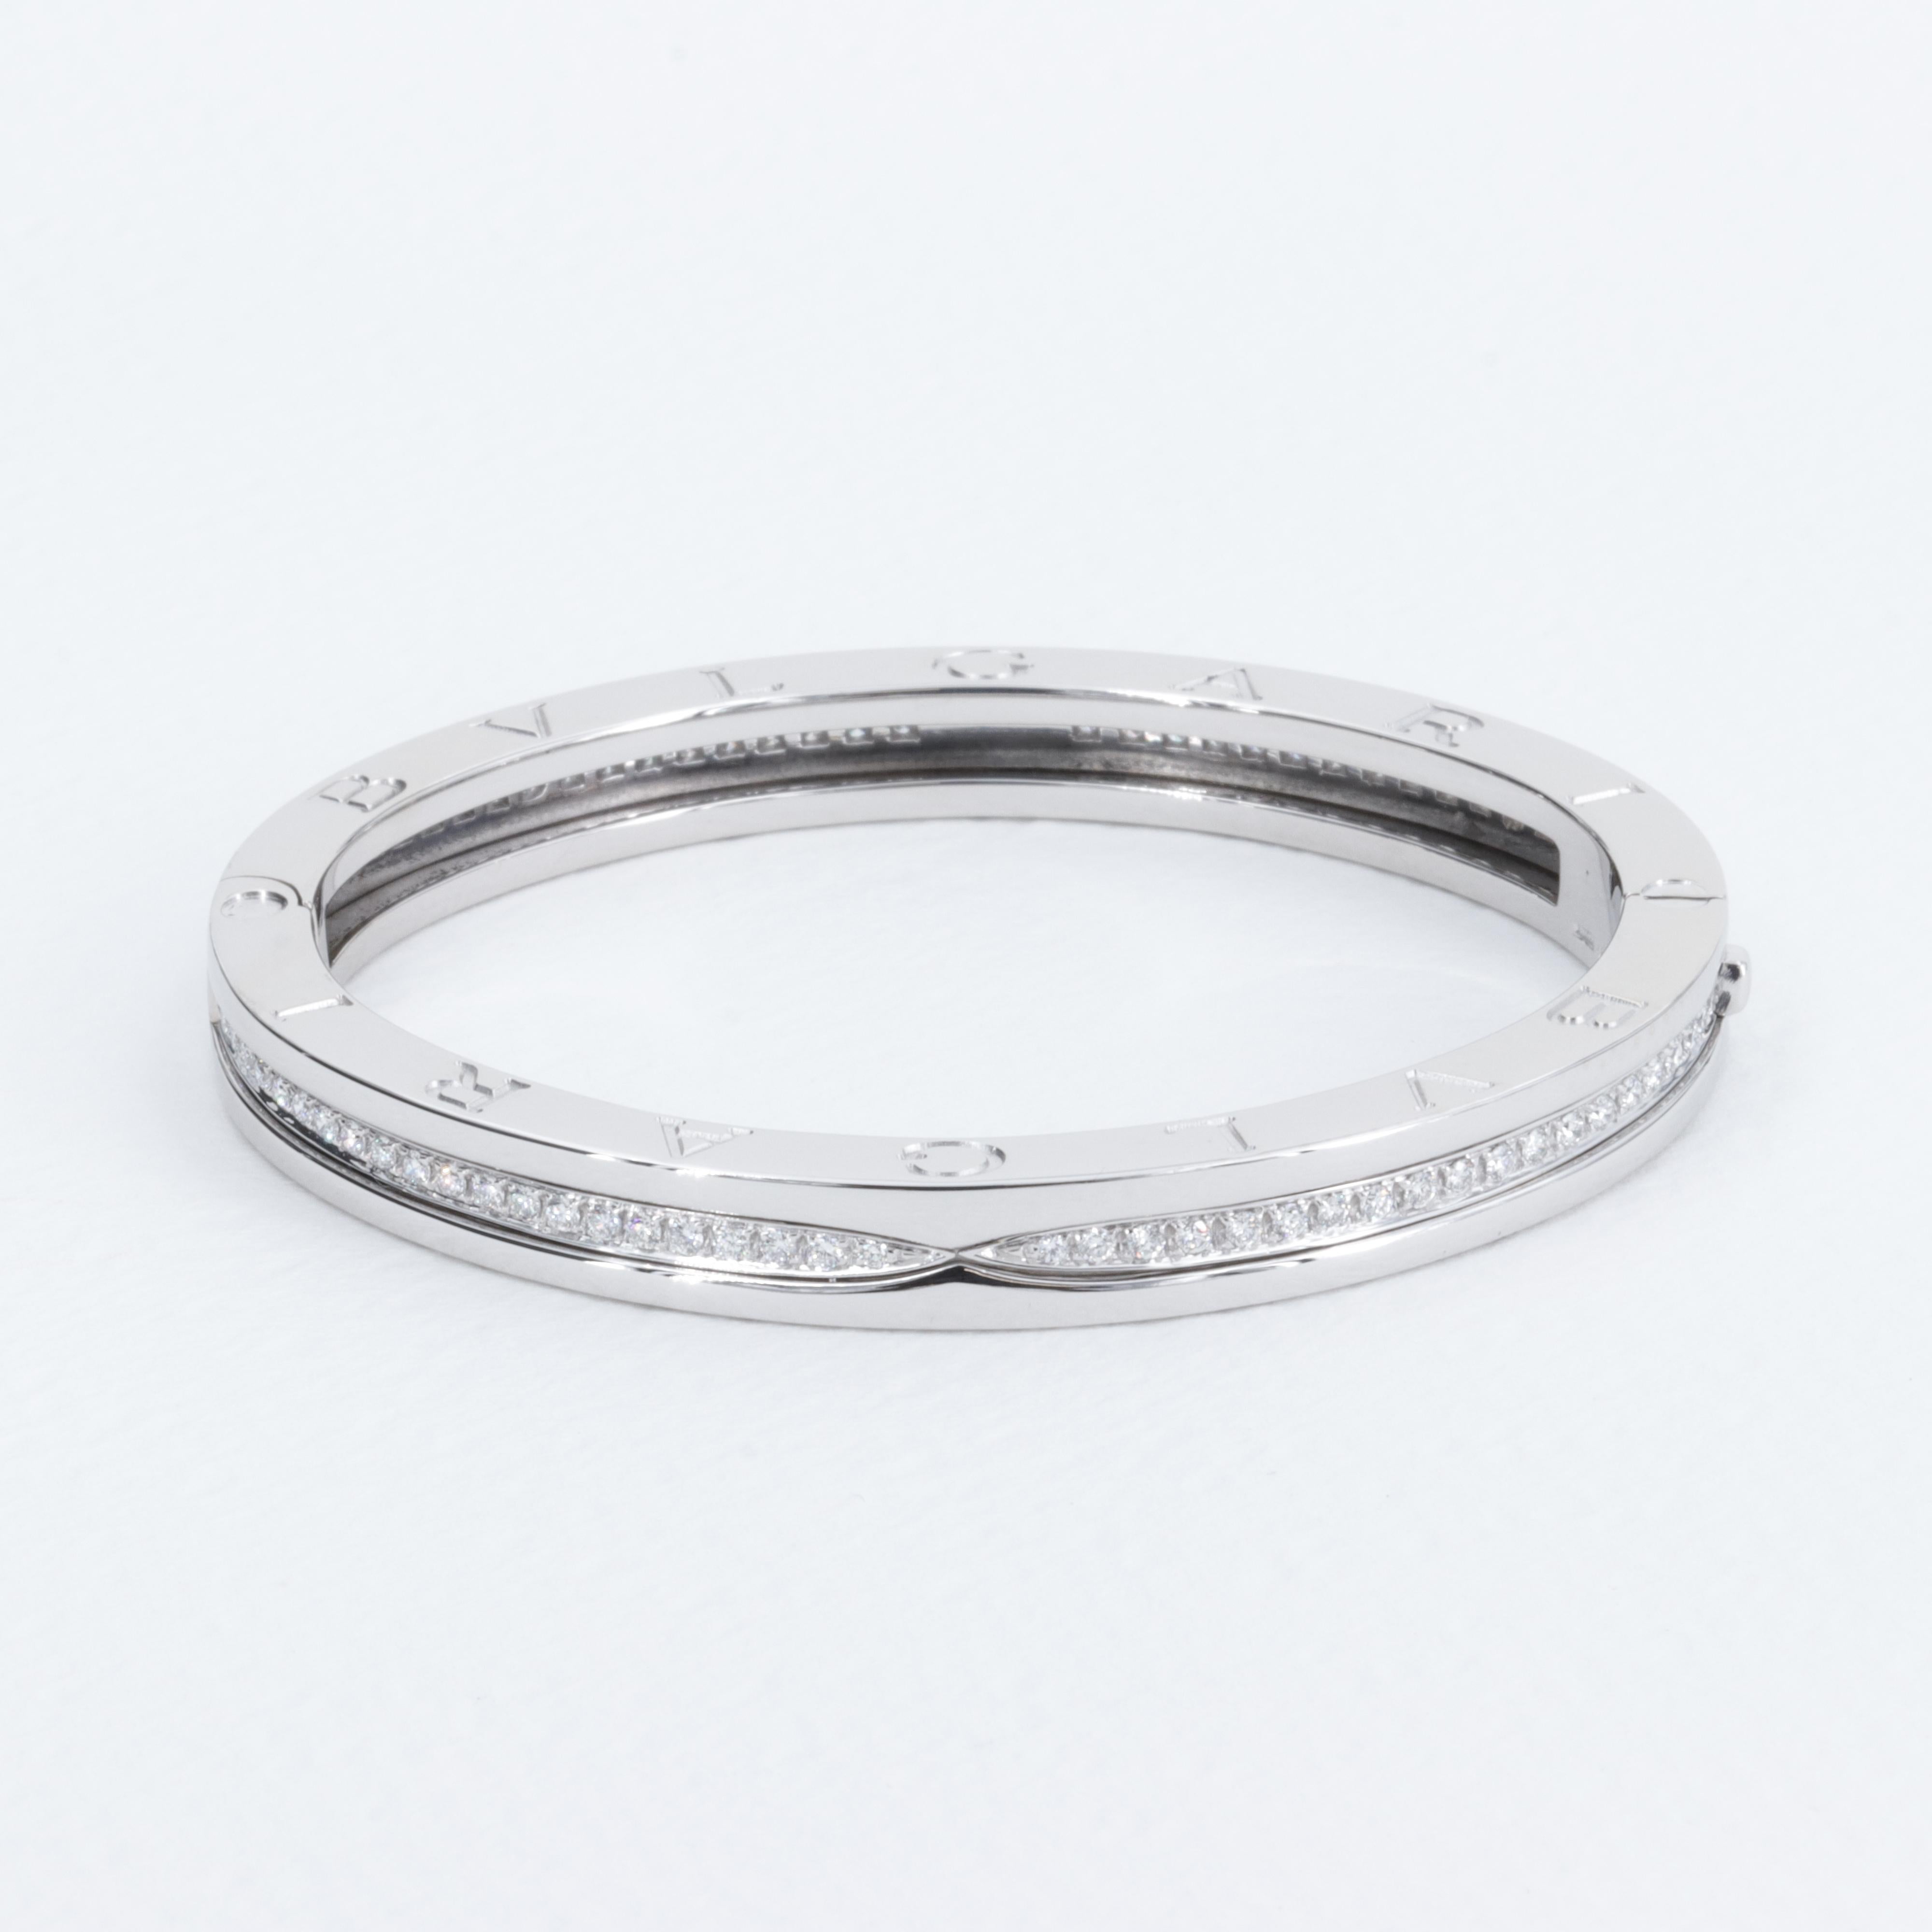 Das ikonische Bzero.1 Bangle Bracelet von Bvlgari ist vom Kolosseum inspiriert und eine Ode an das italienische Erbe des berühmten Schmuckhauses. Fachmännisch mit runden Diamanten im Brillantschliff besetzt, ist dieses Armband ein fantastisches